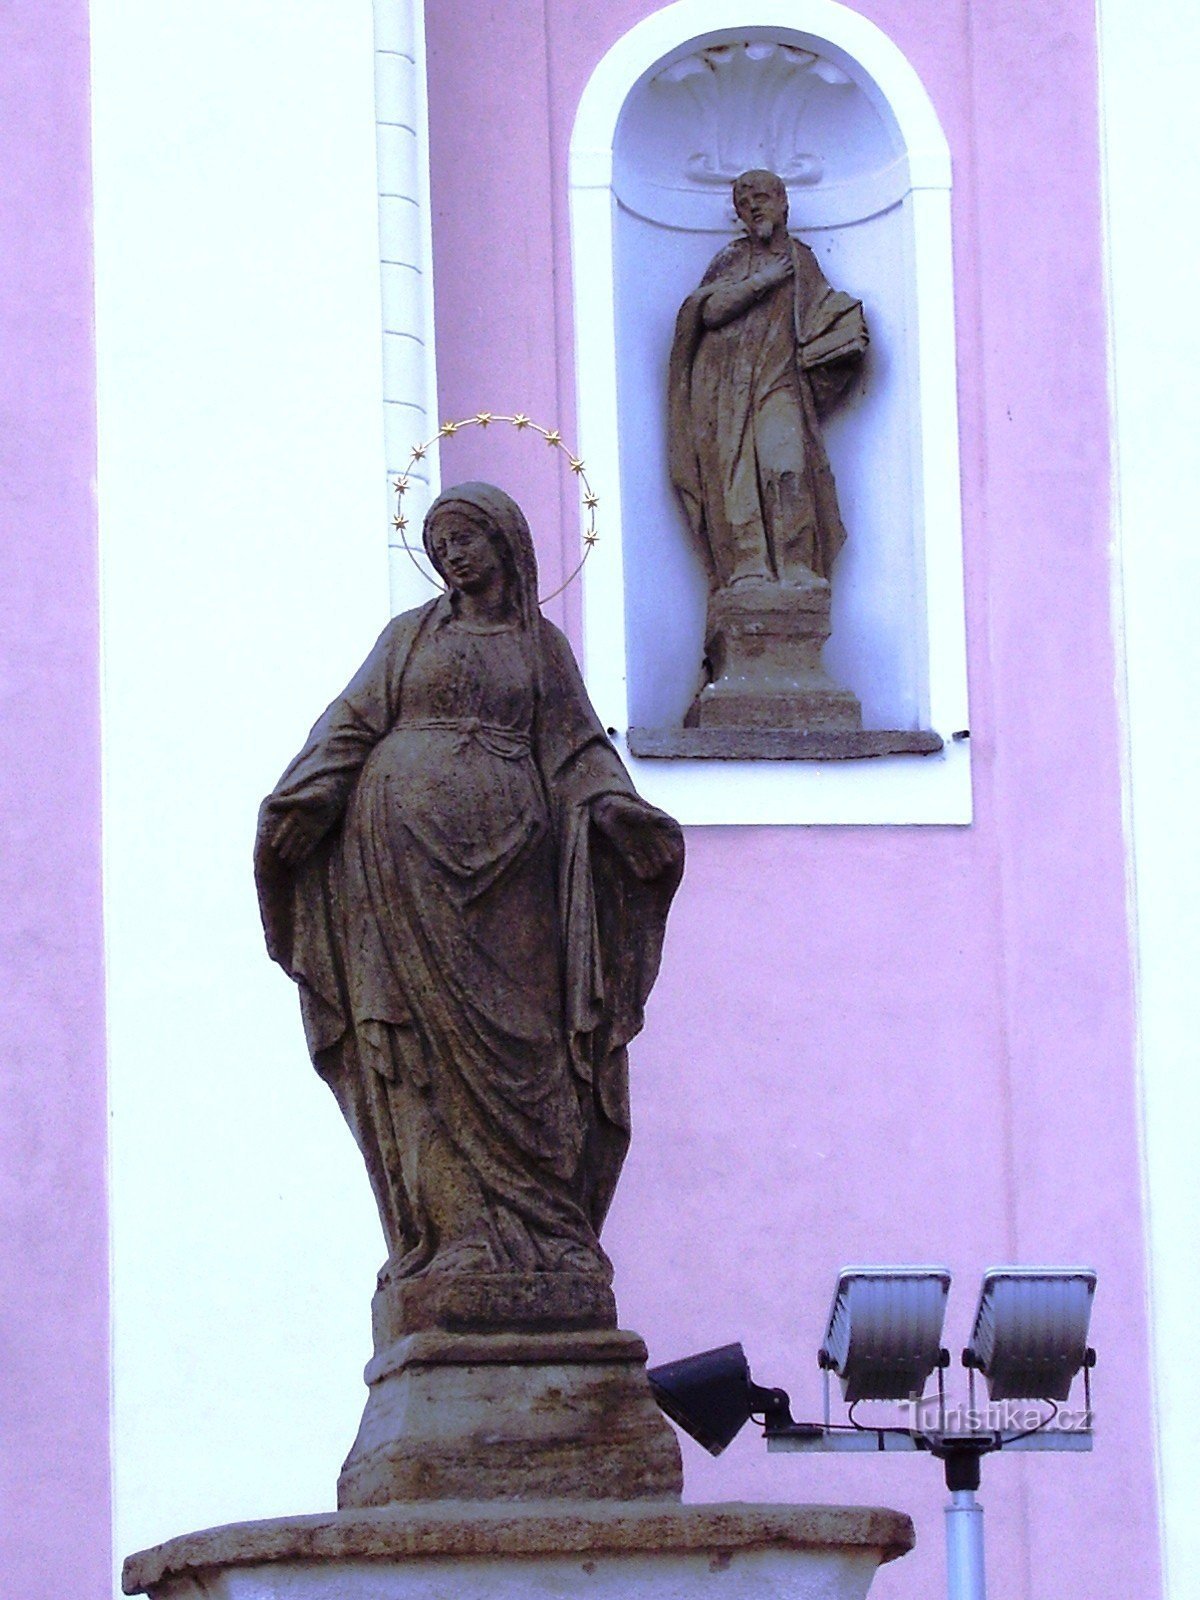 Nové Veselí - kirke og statuer